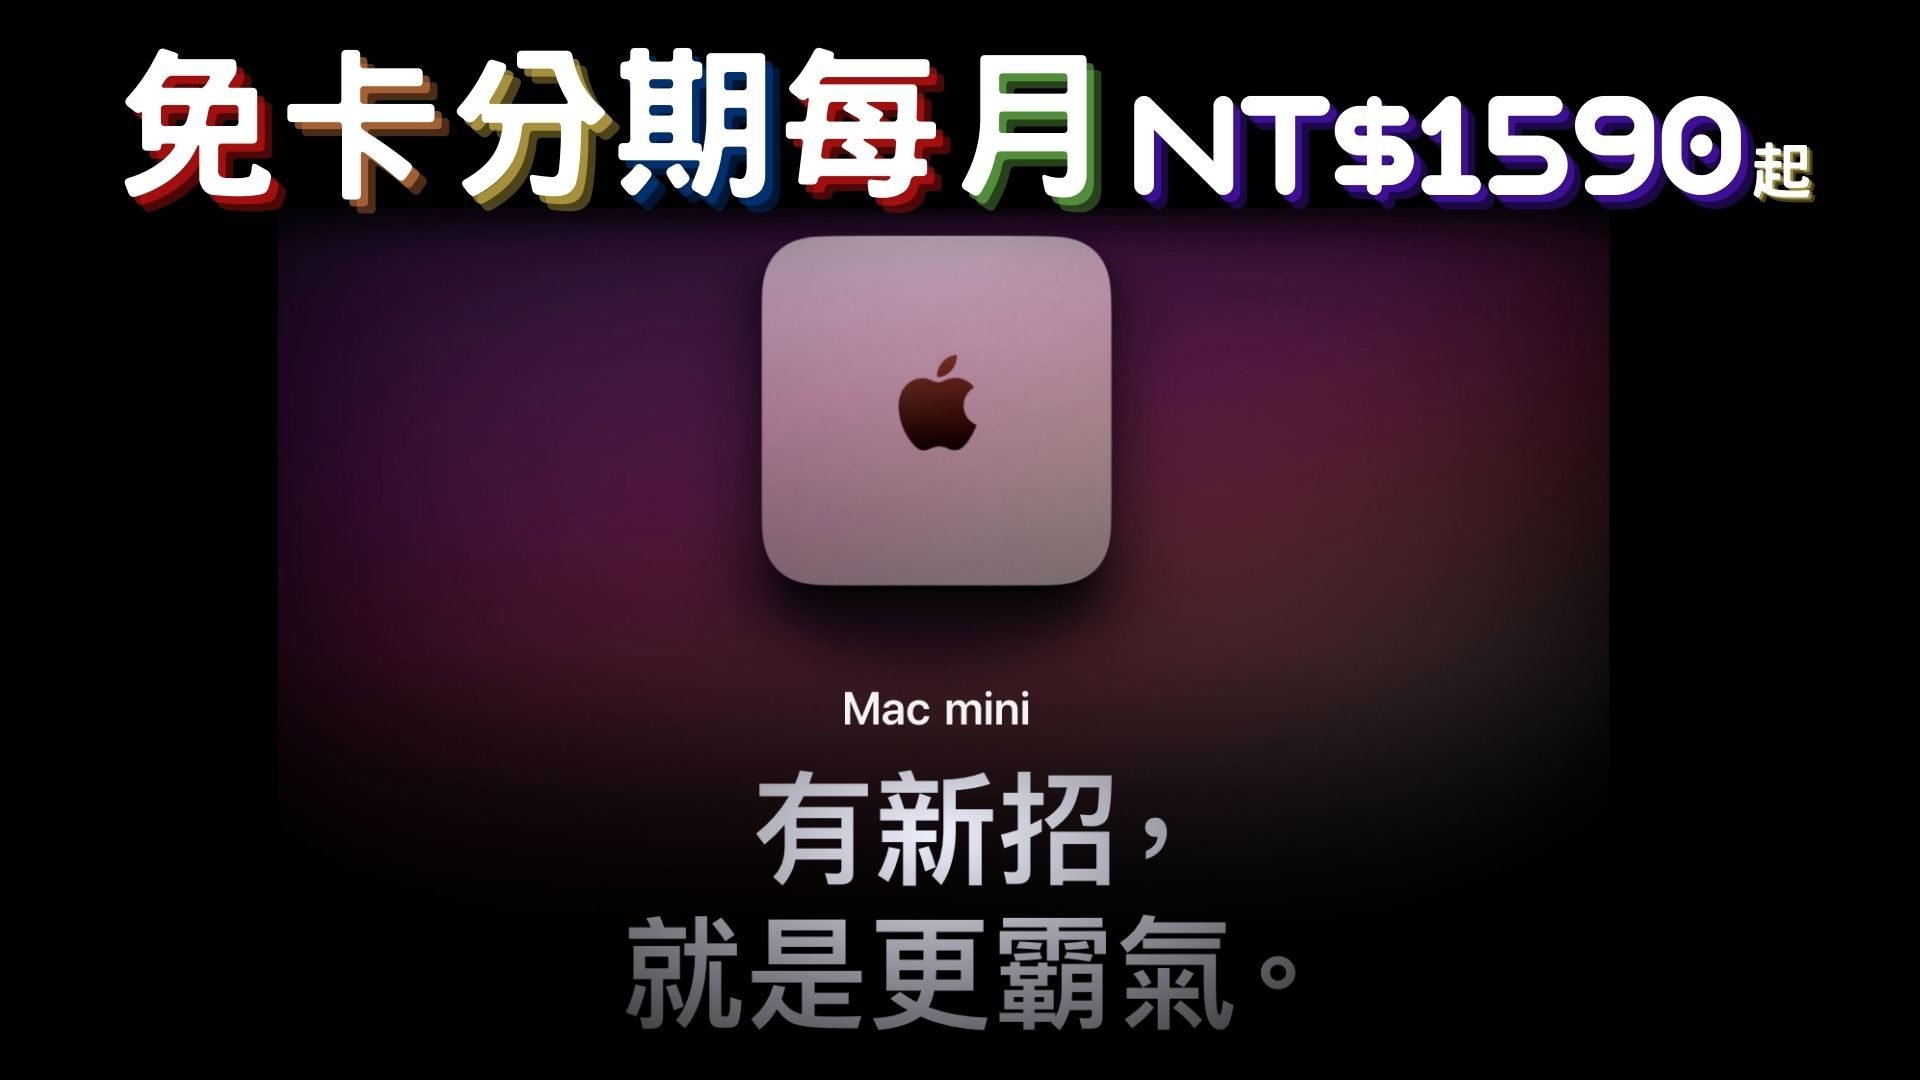 mac mini 免卡分期